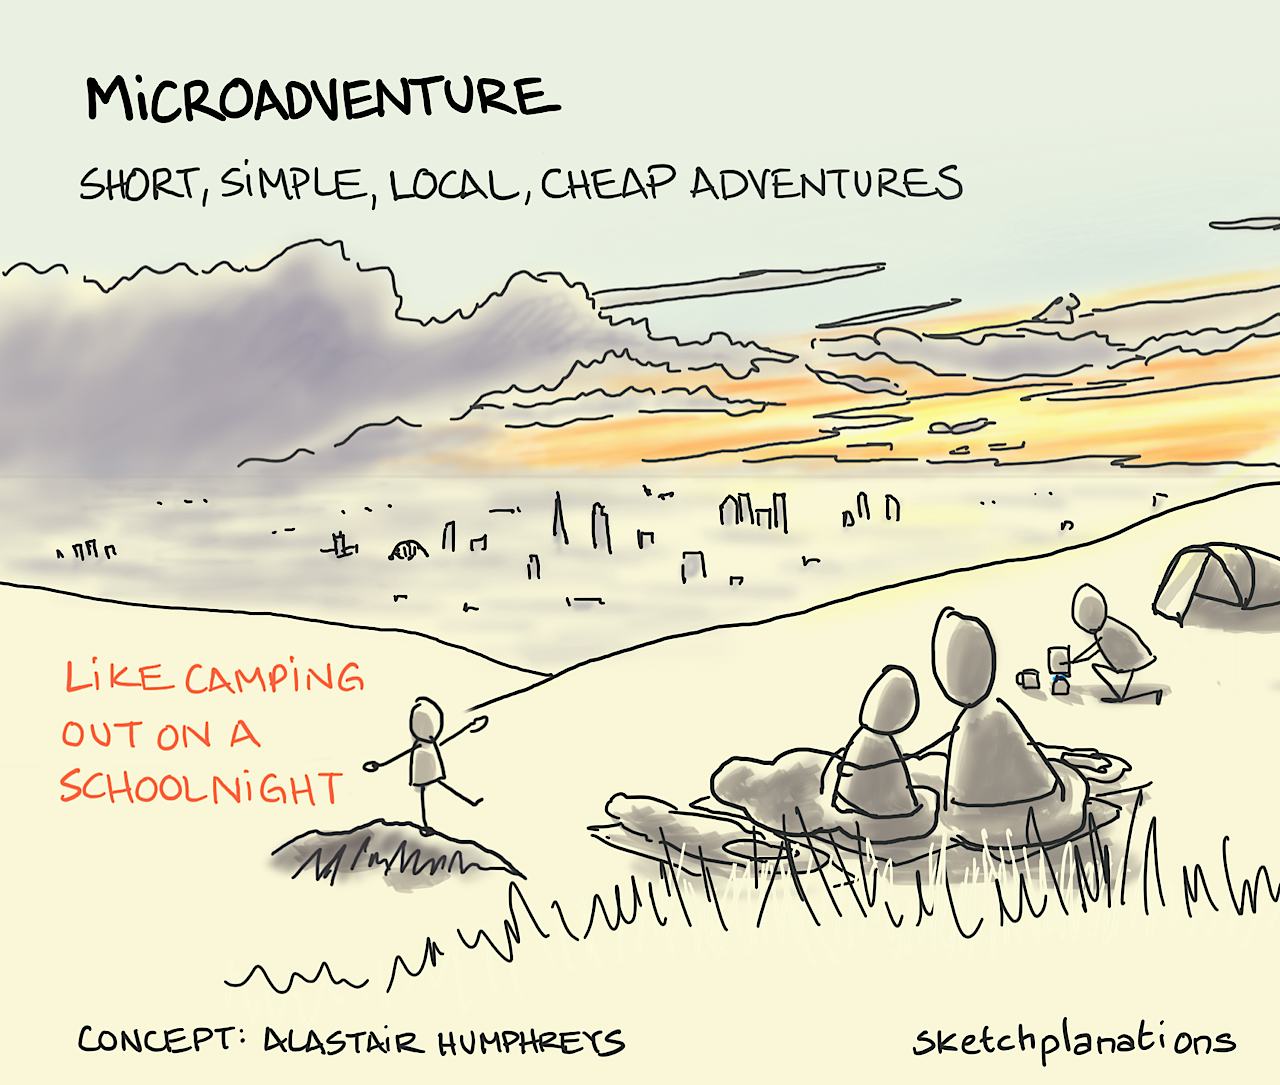 Microadventure - Sketchplanations